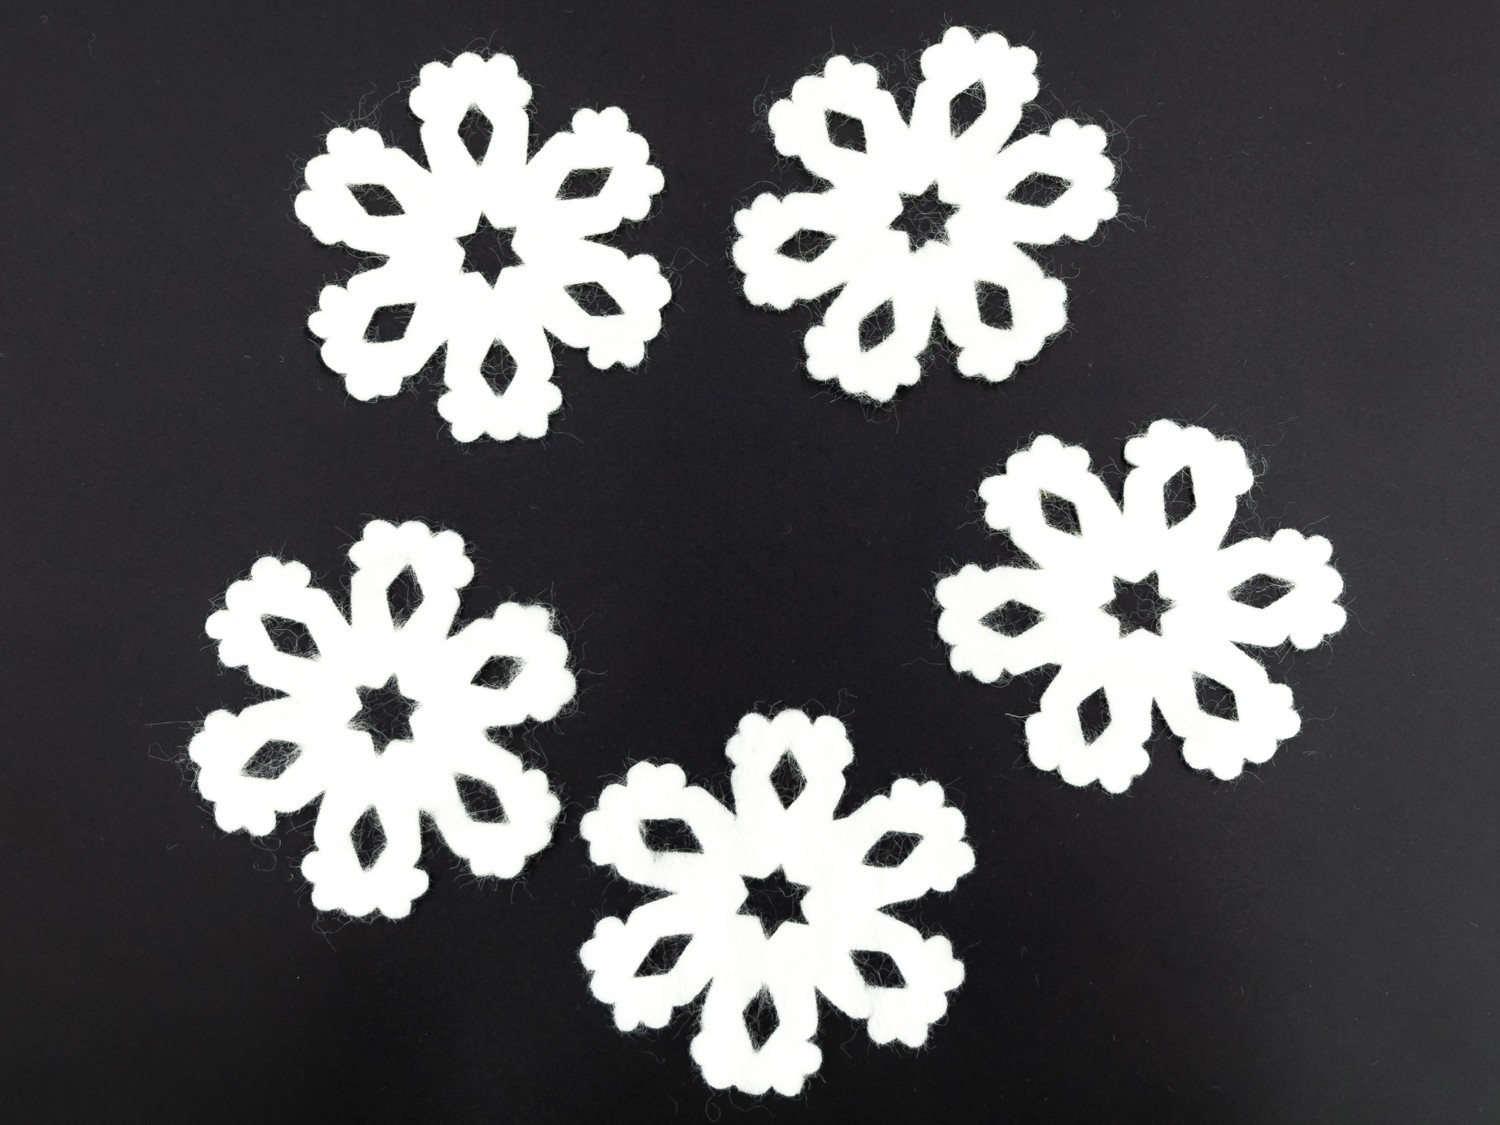 10cm White Felt Snowflakes